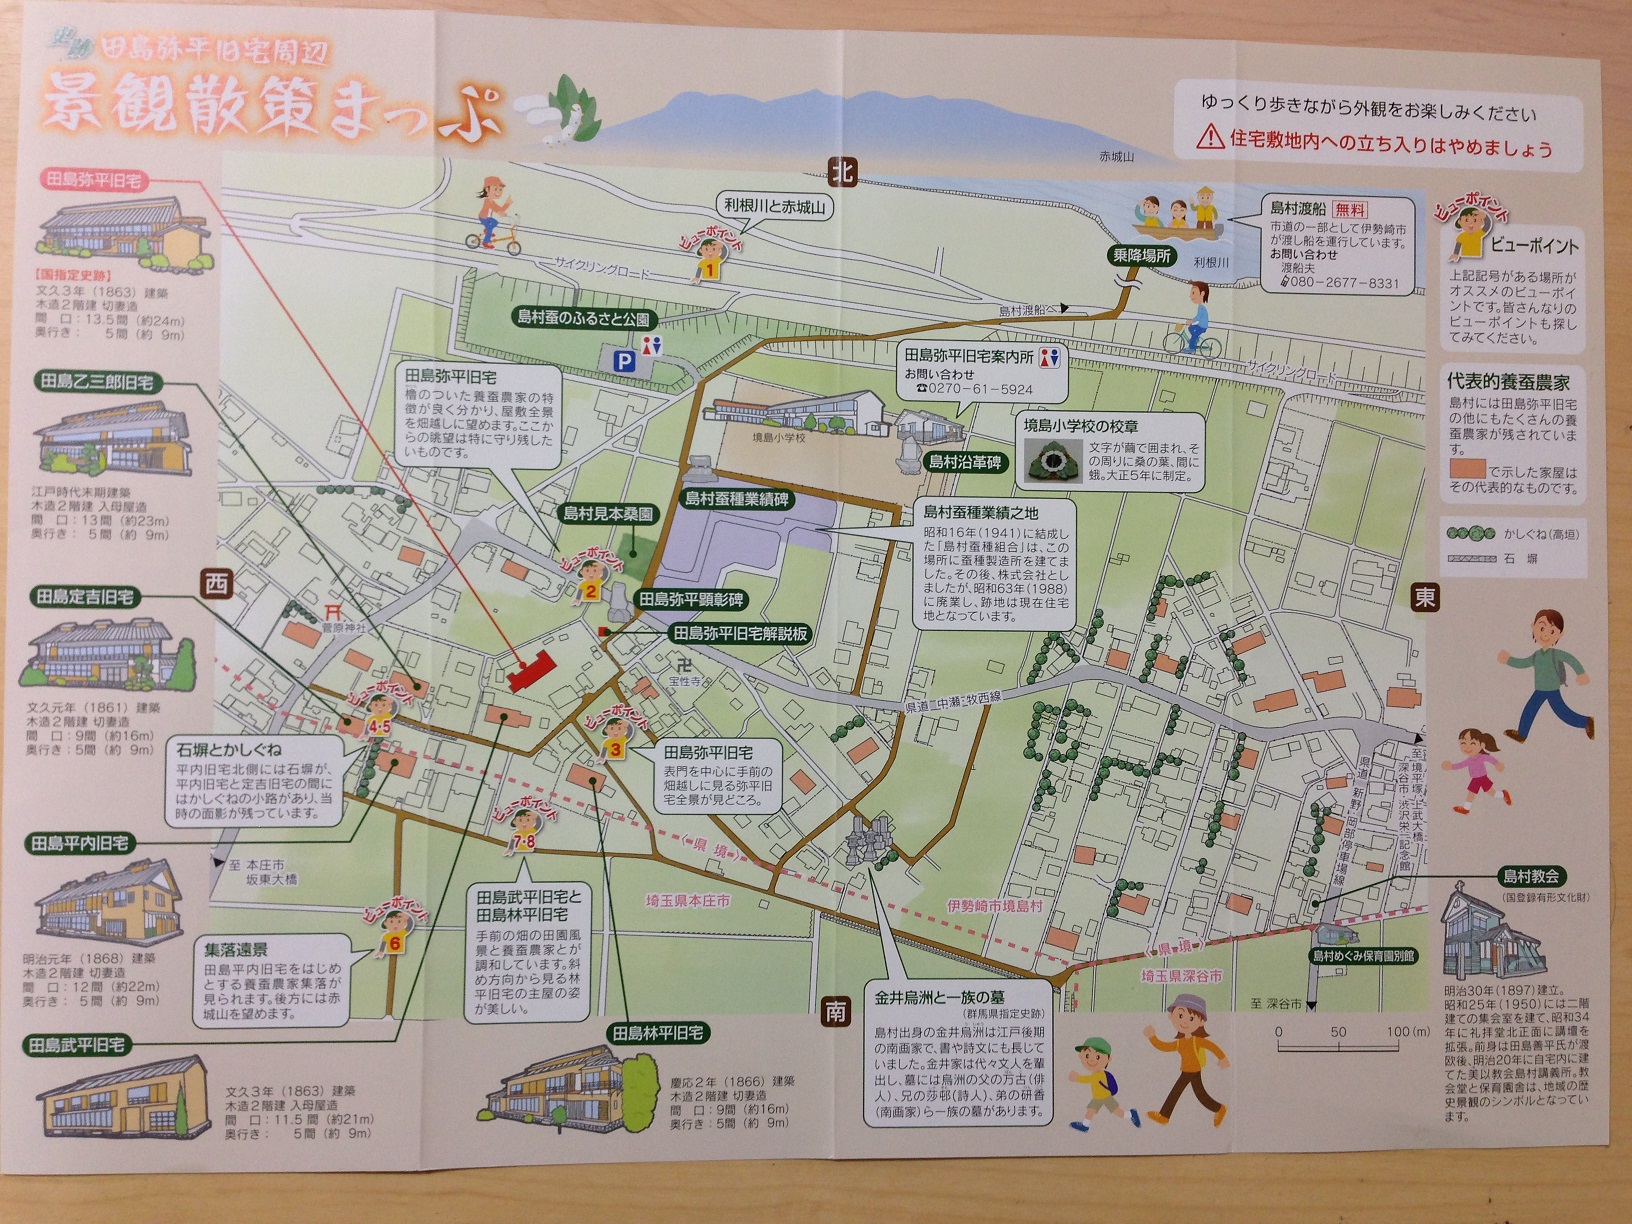 田島弥平旧宅周辺景観散策マップ